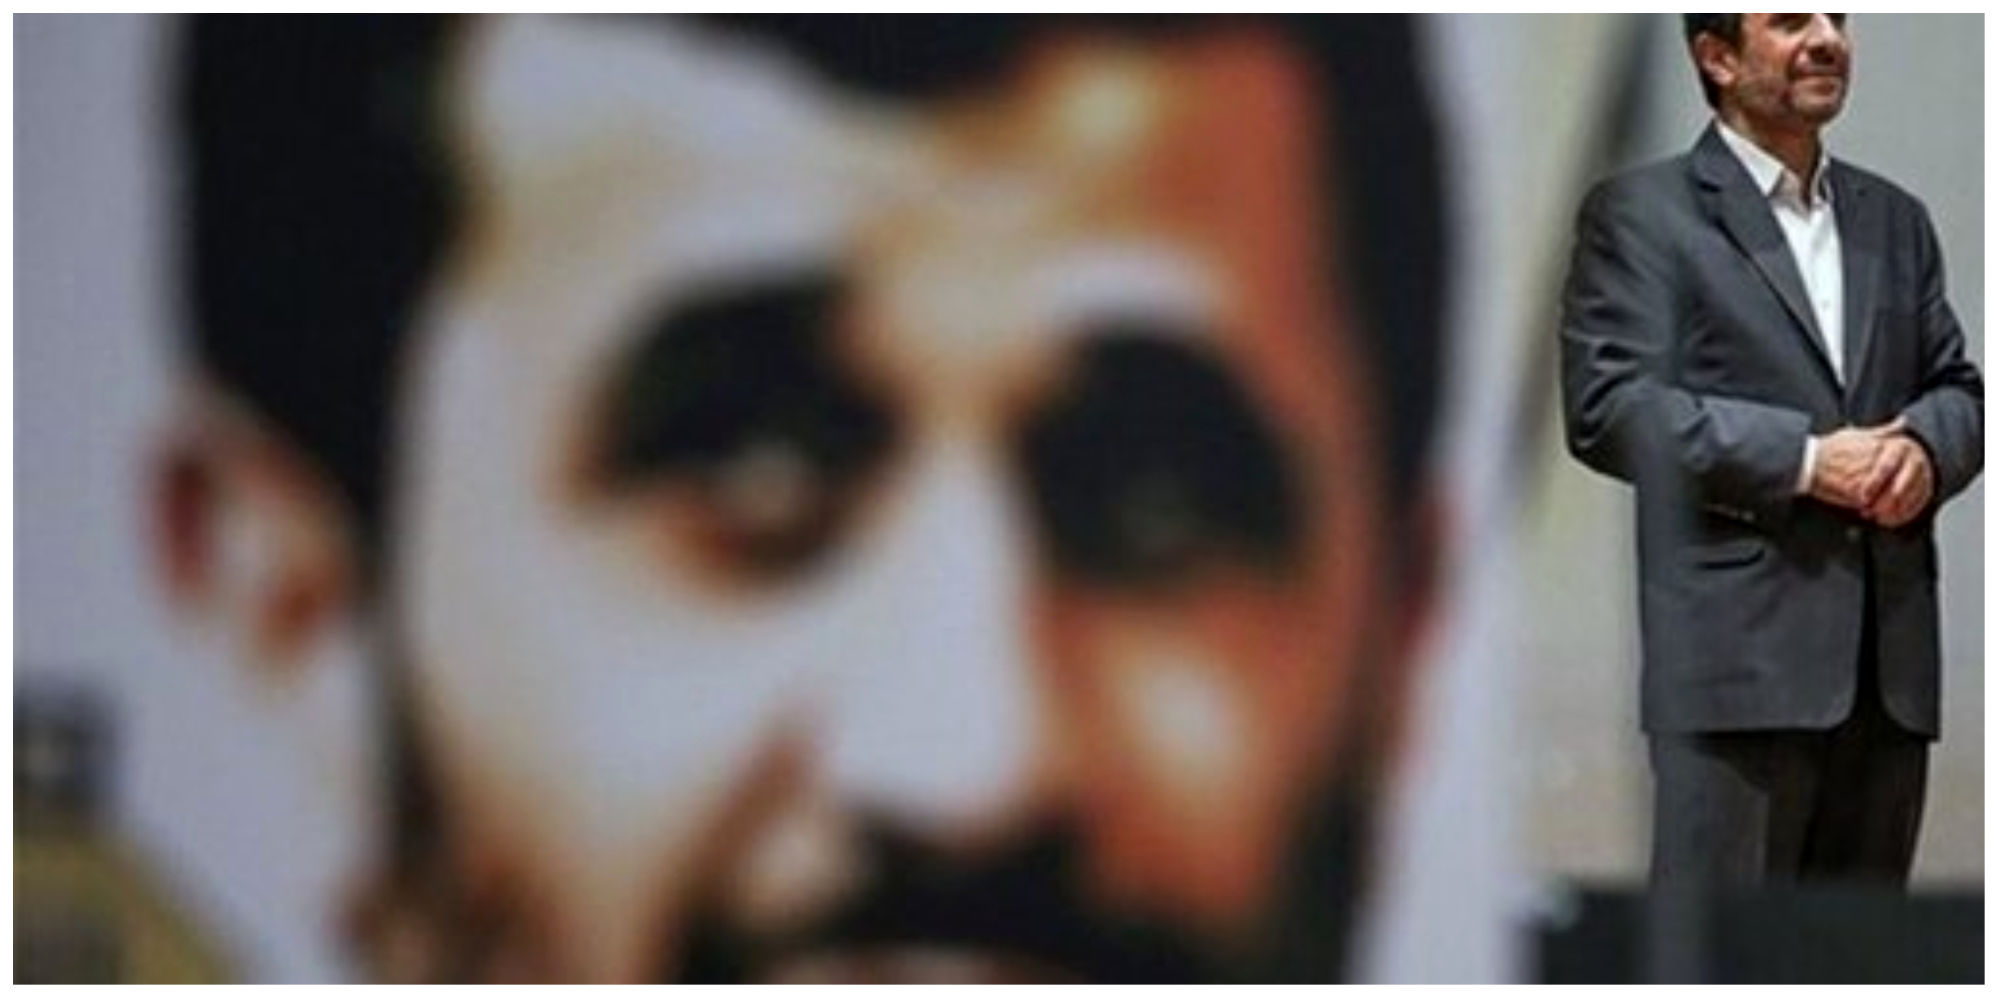  خاک خوردن ماشین احمدی نژاد در پارکینگ بهزیستی !+تصاویر